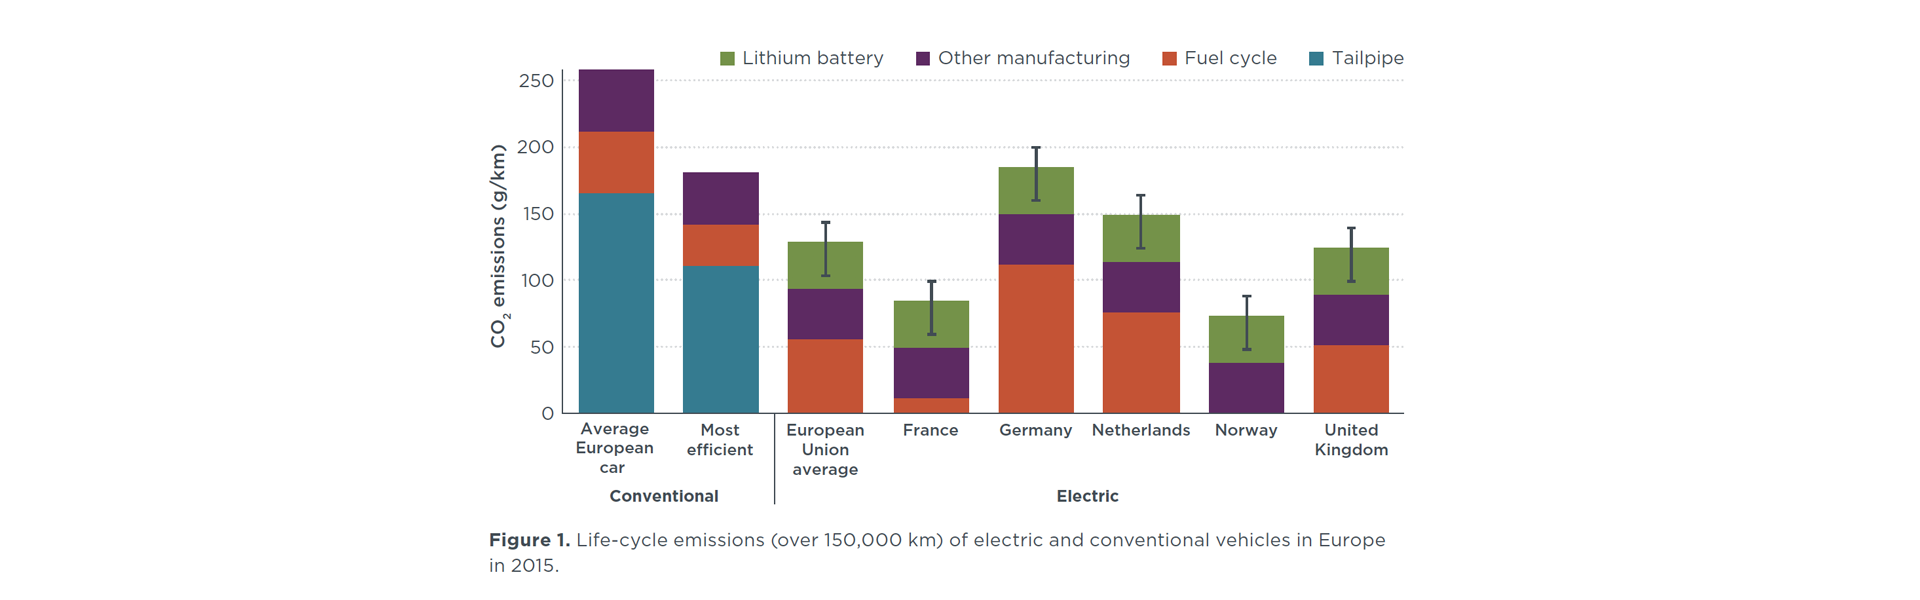 impactos del vehículo eléctrico según país